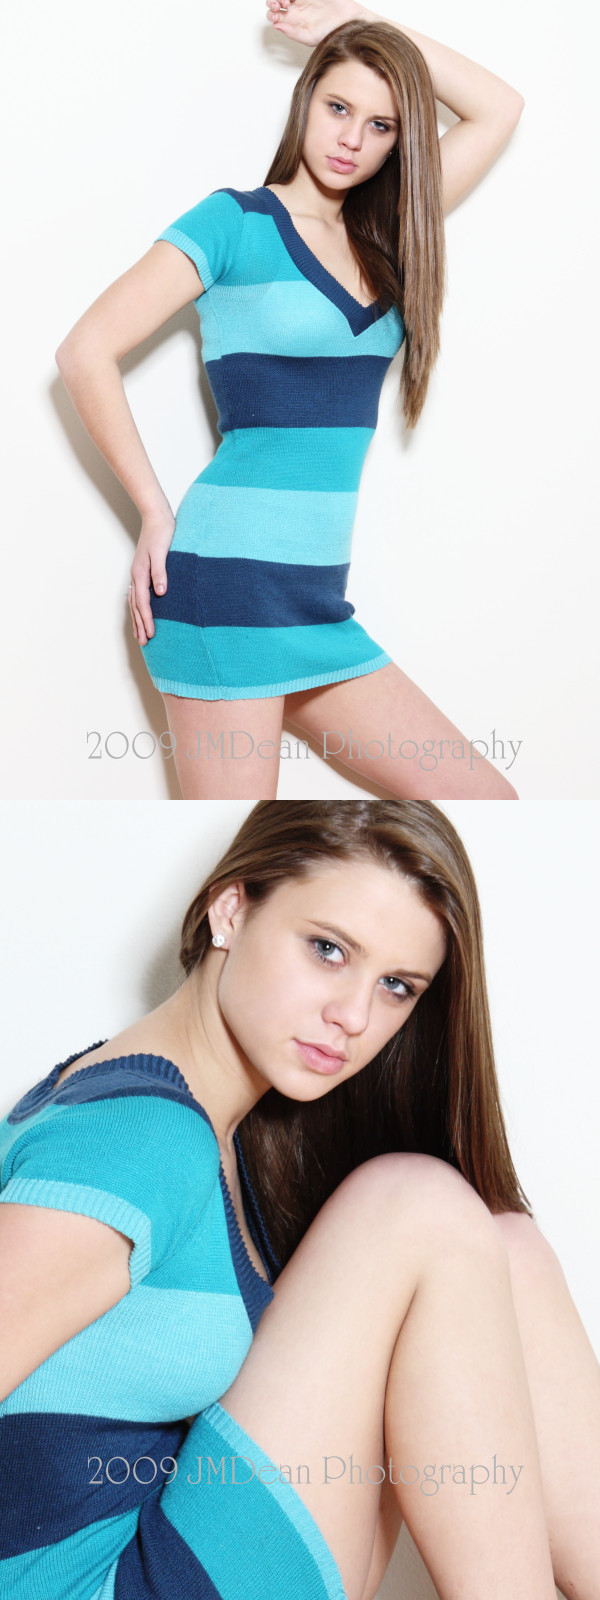 Female model photo shoot of Kaitlyn Patterson by JM Dean